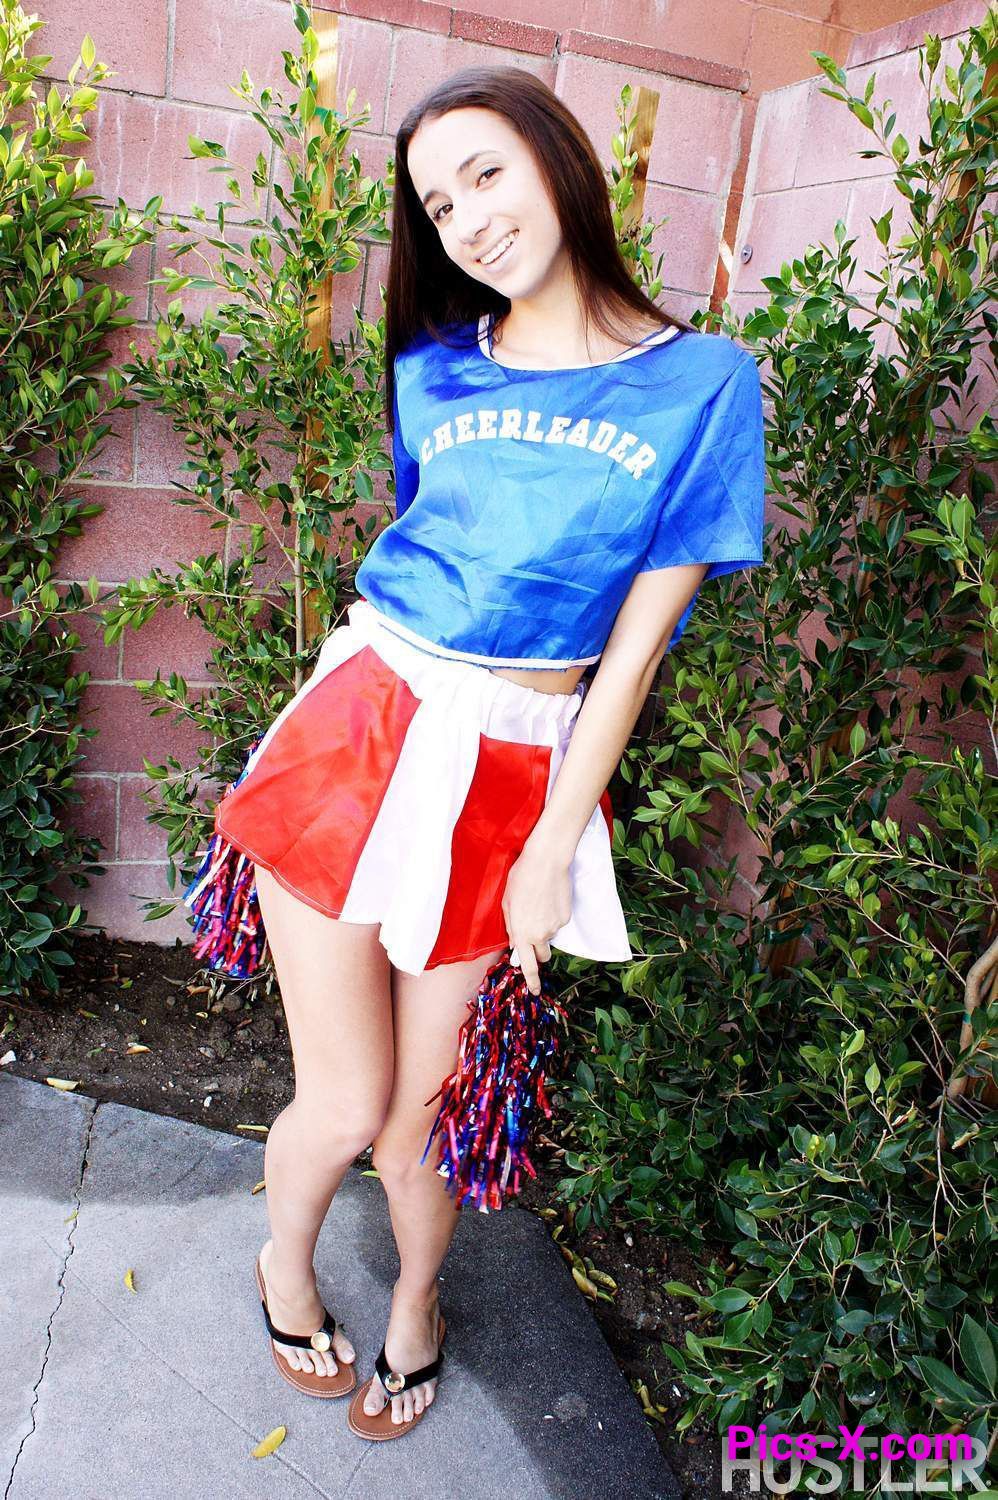 Belle Knox in Naughty Cheerleaders 4 pt. 2 - Image 12